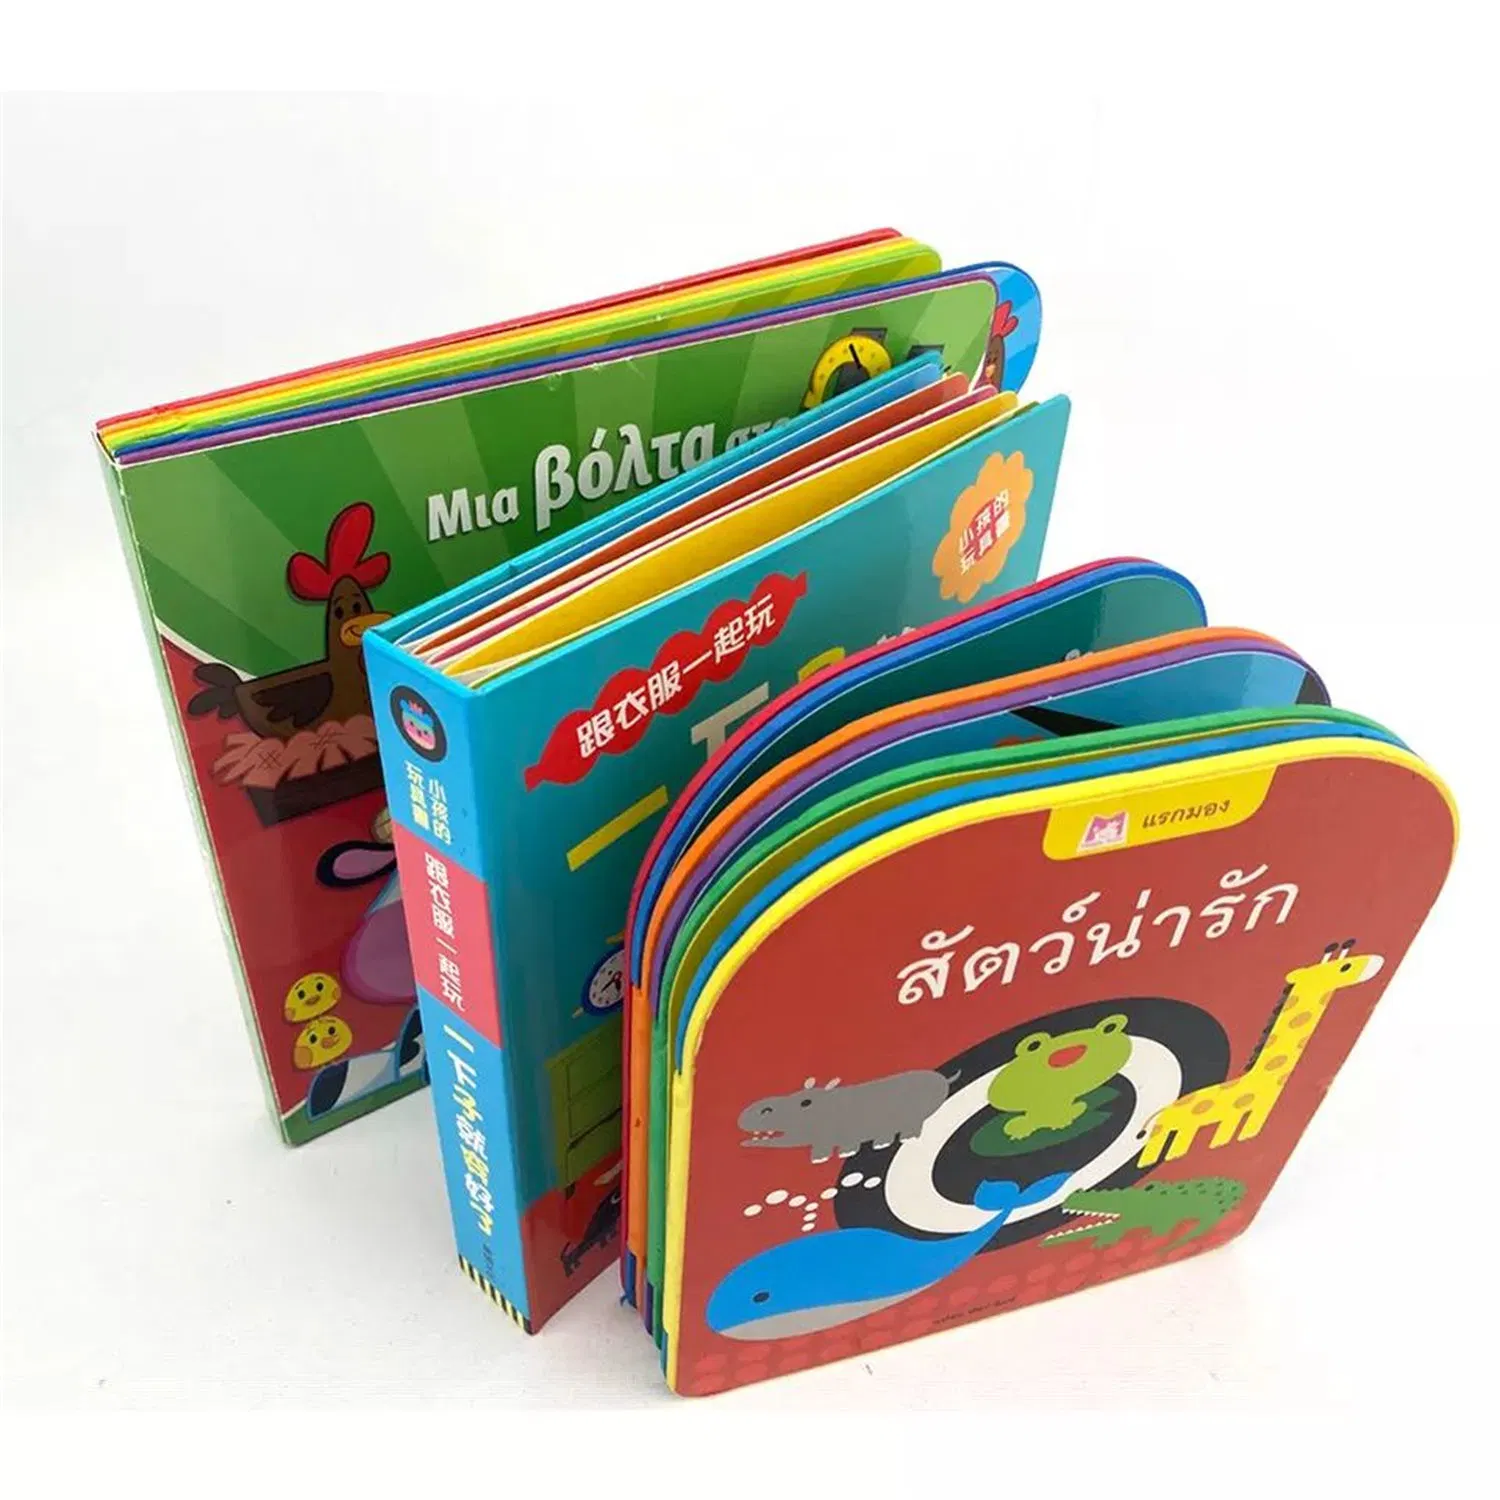 OEM / ODM livres des enfants des livres parlés à la certification de jouets éducatifs pour les enfants Les enfants